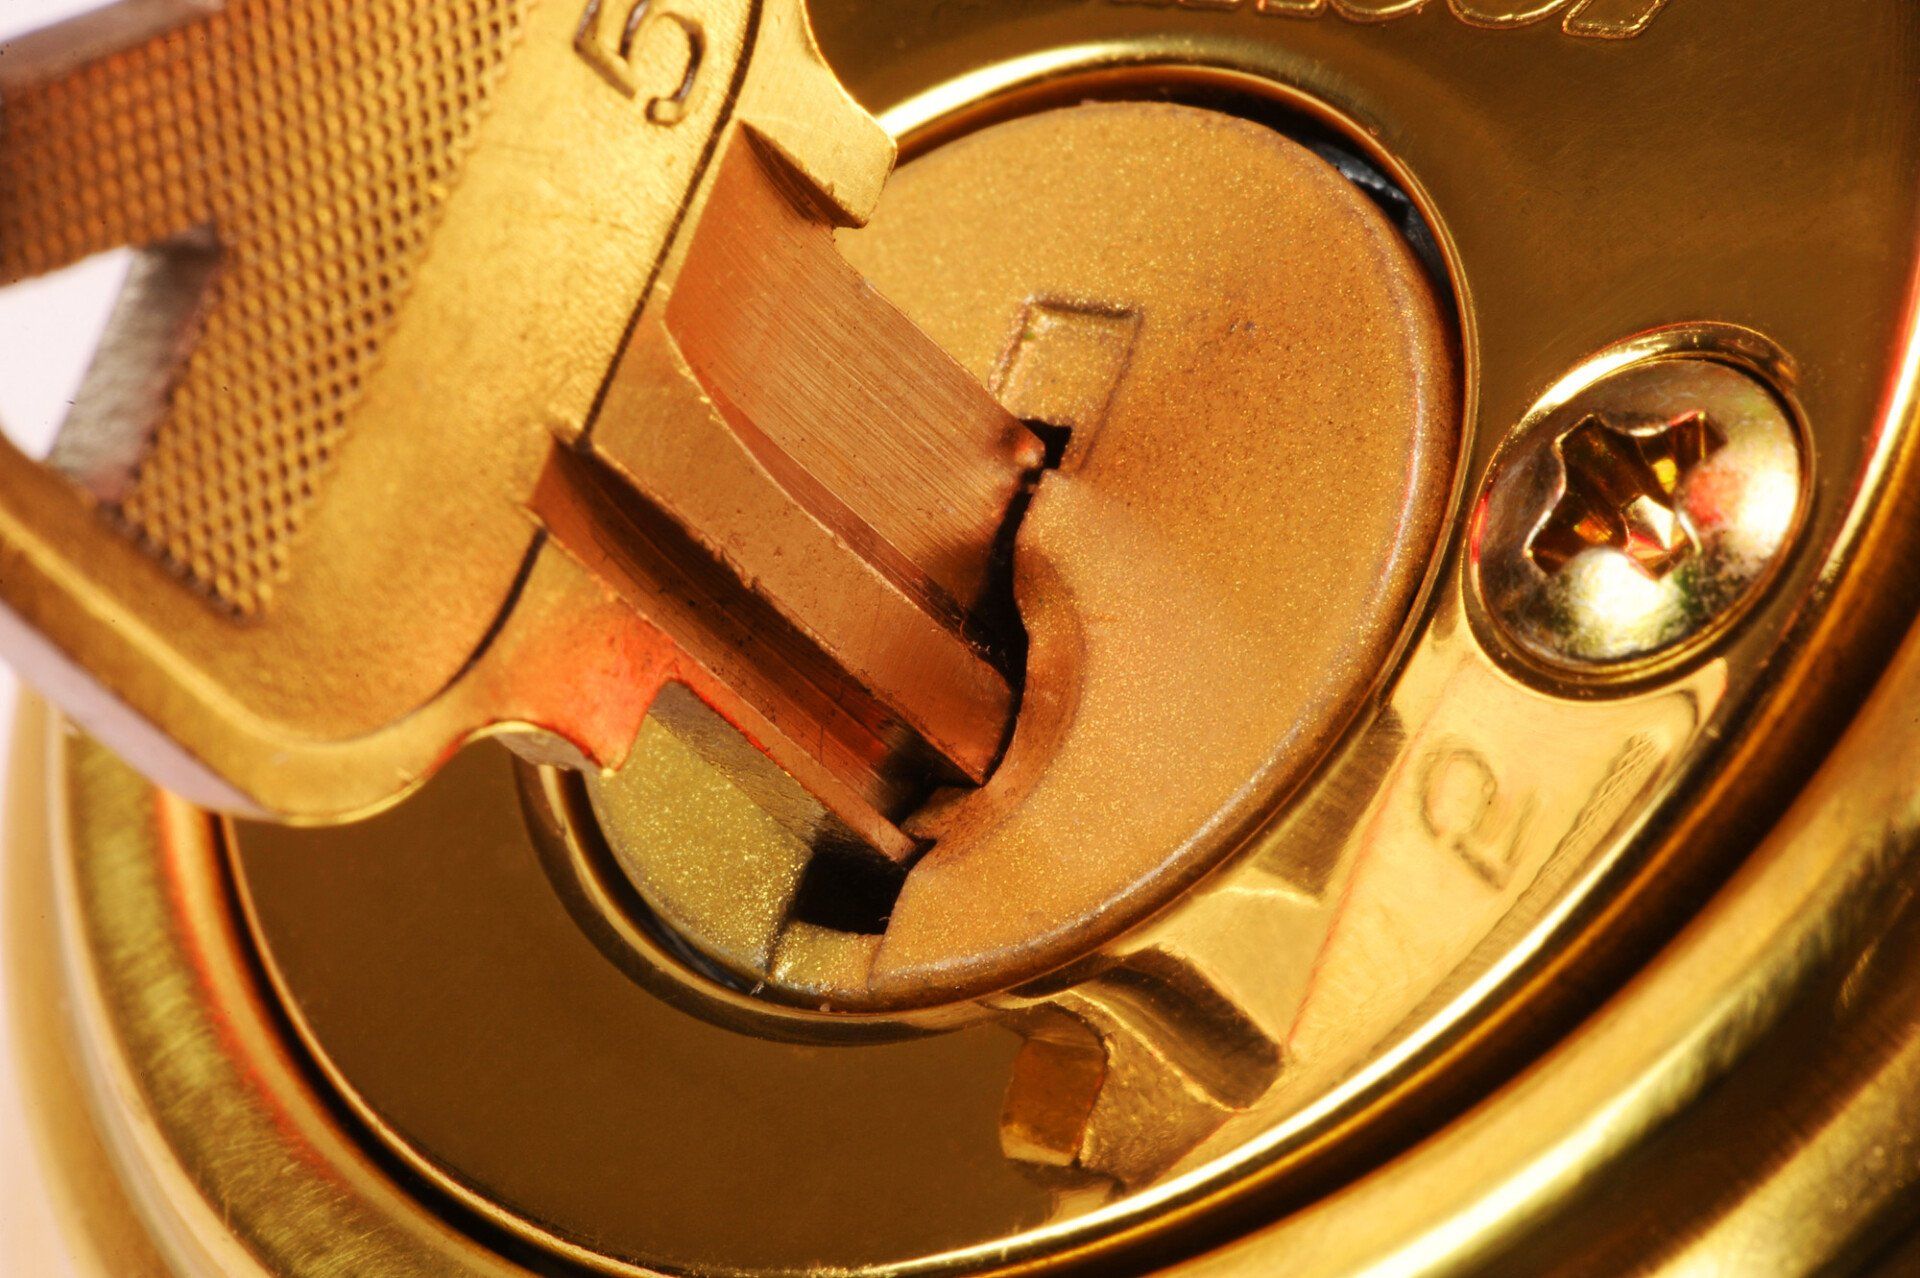 uPVC door with key in lock